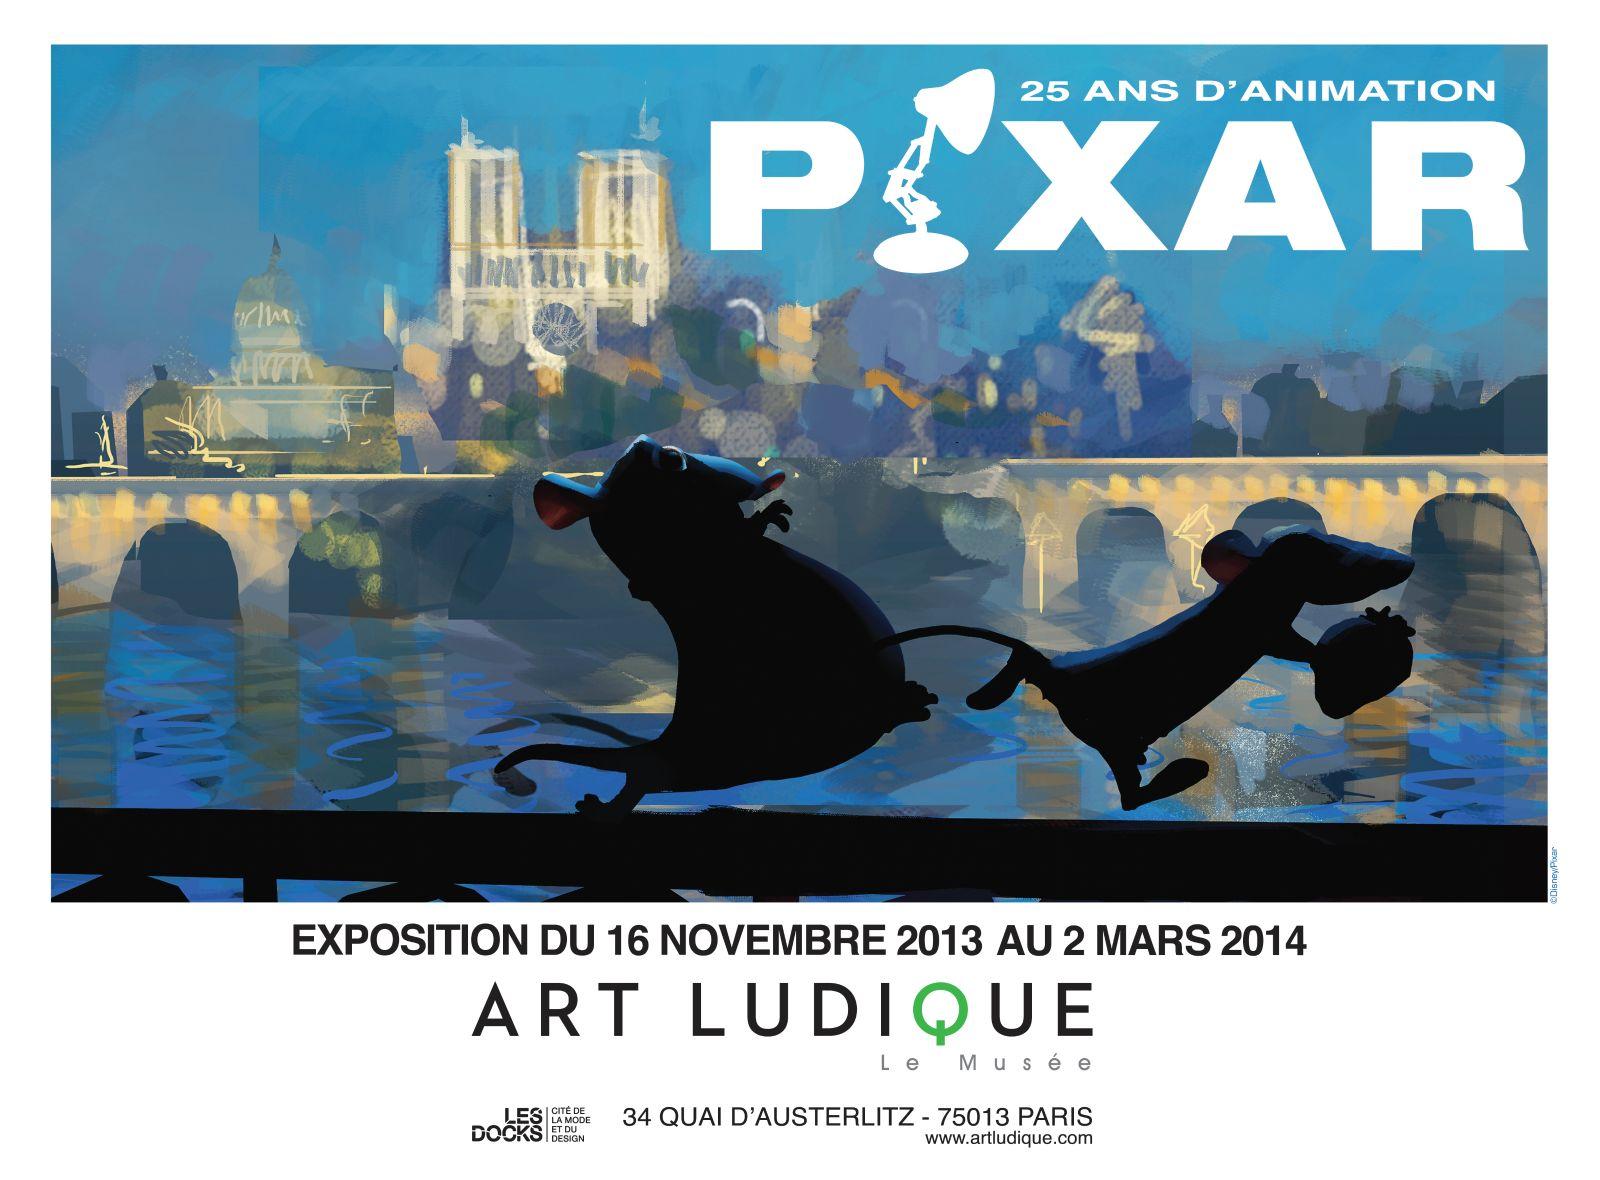 Pixar à l'honneur à ART LUDIQUE - Le musée (vidéo)